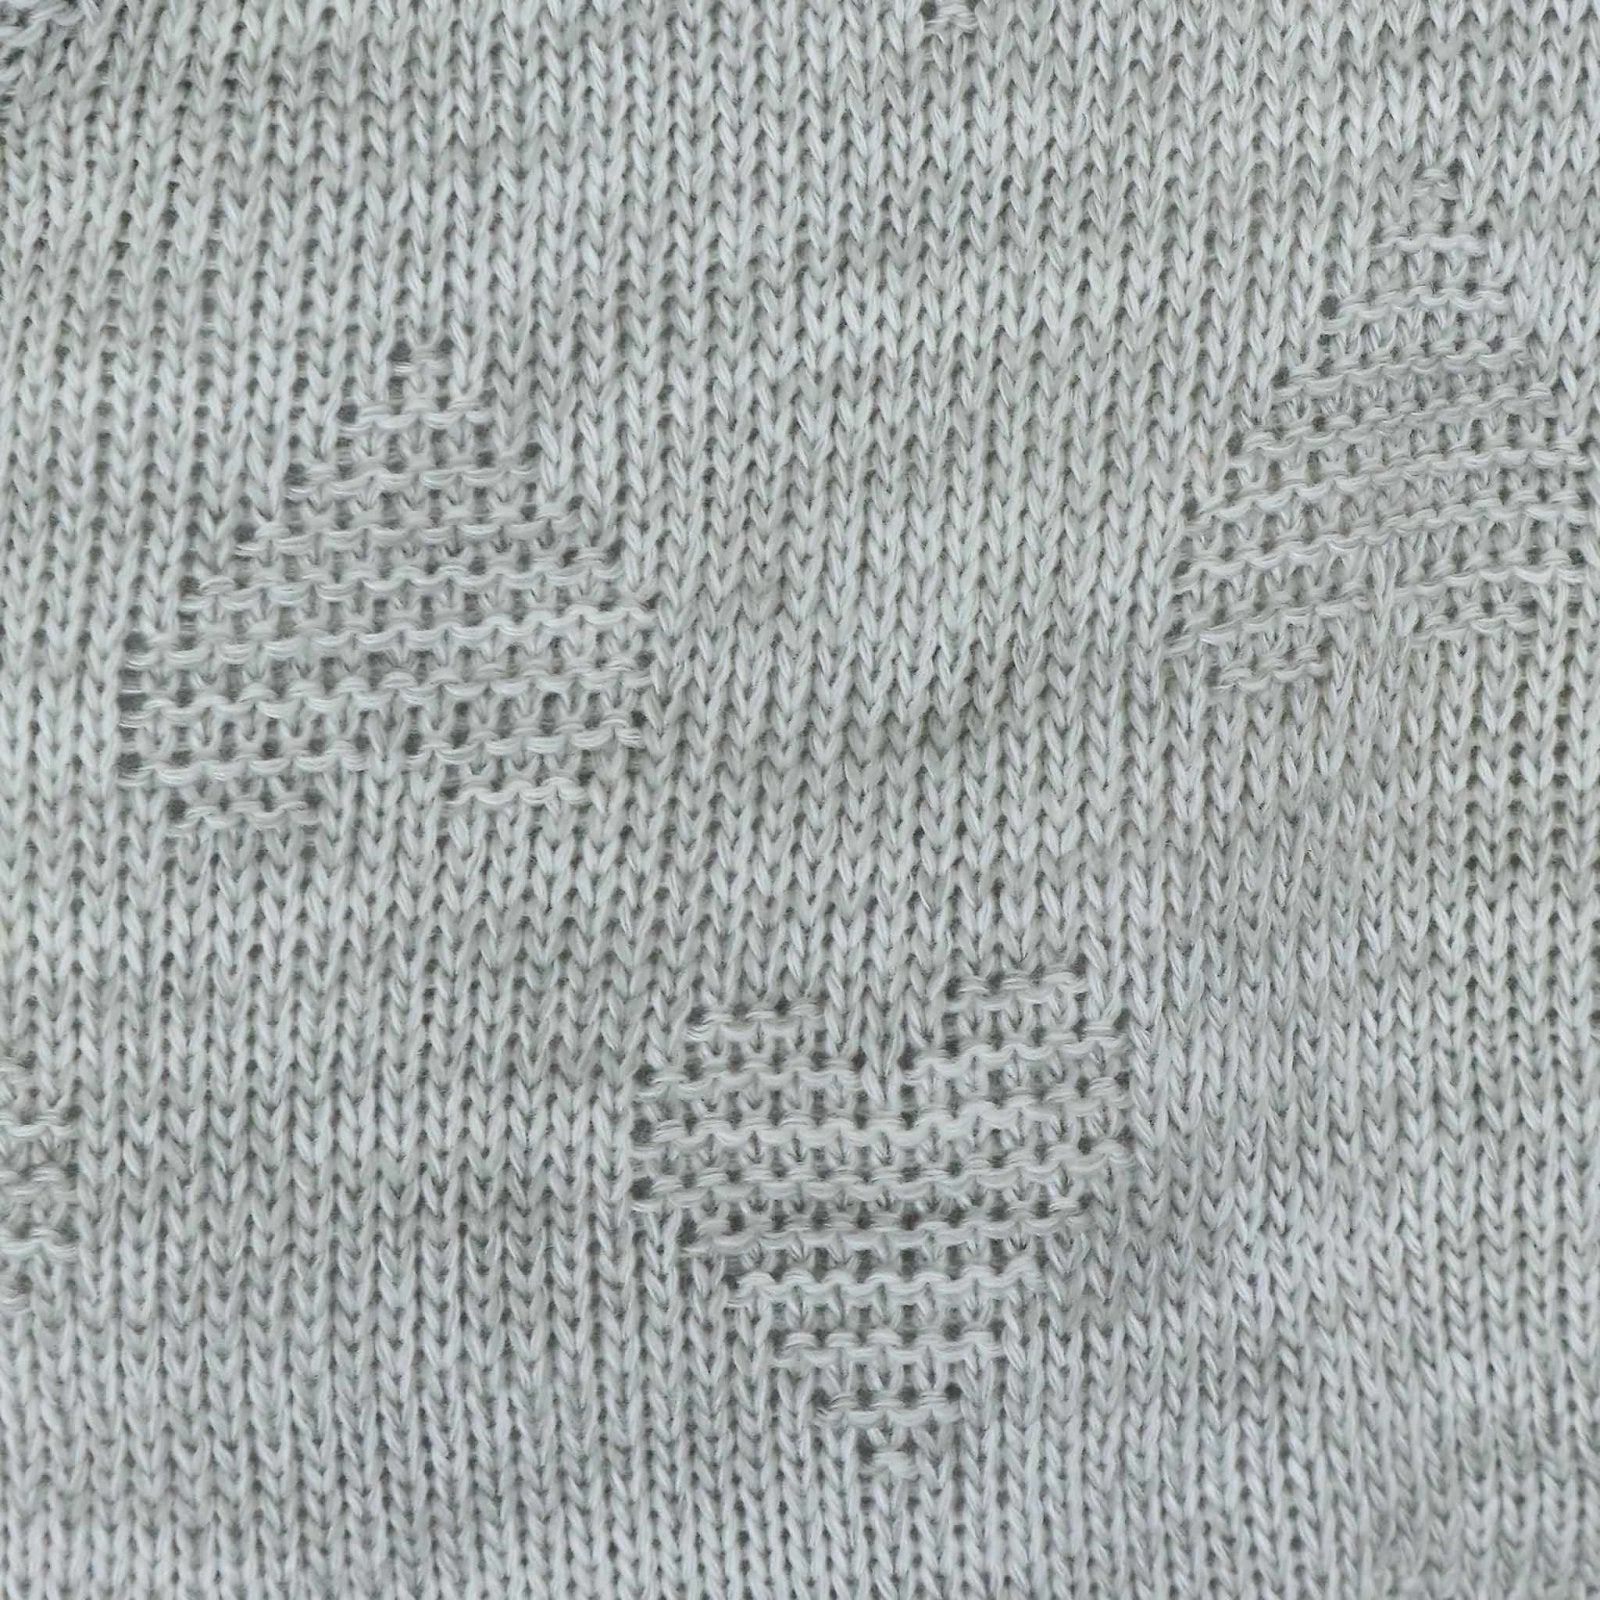 Hooded Woolen Romper Heart Pattern Grey Color by Little Darling